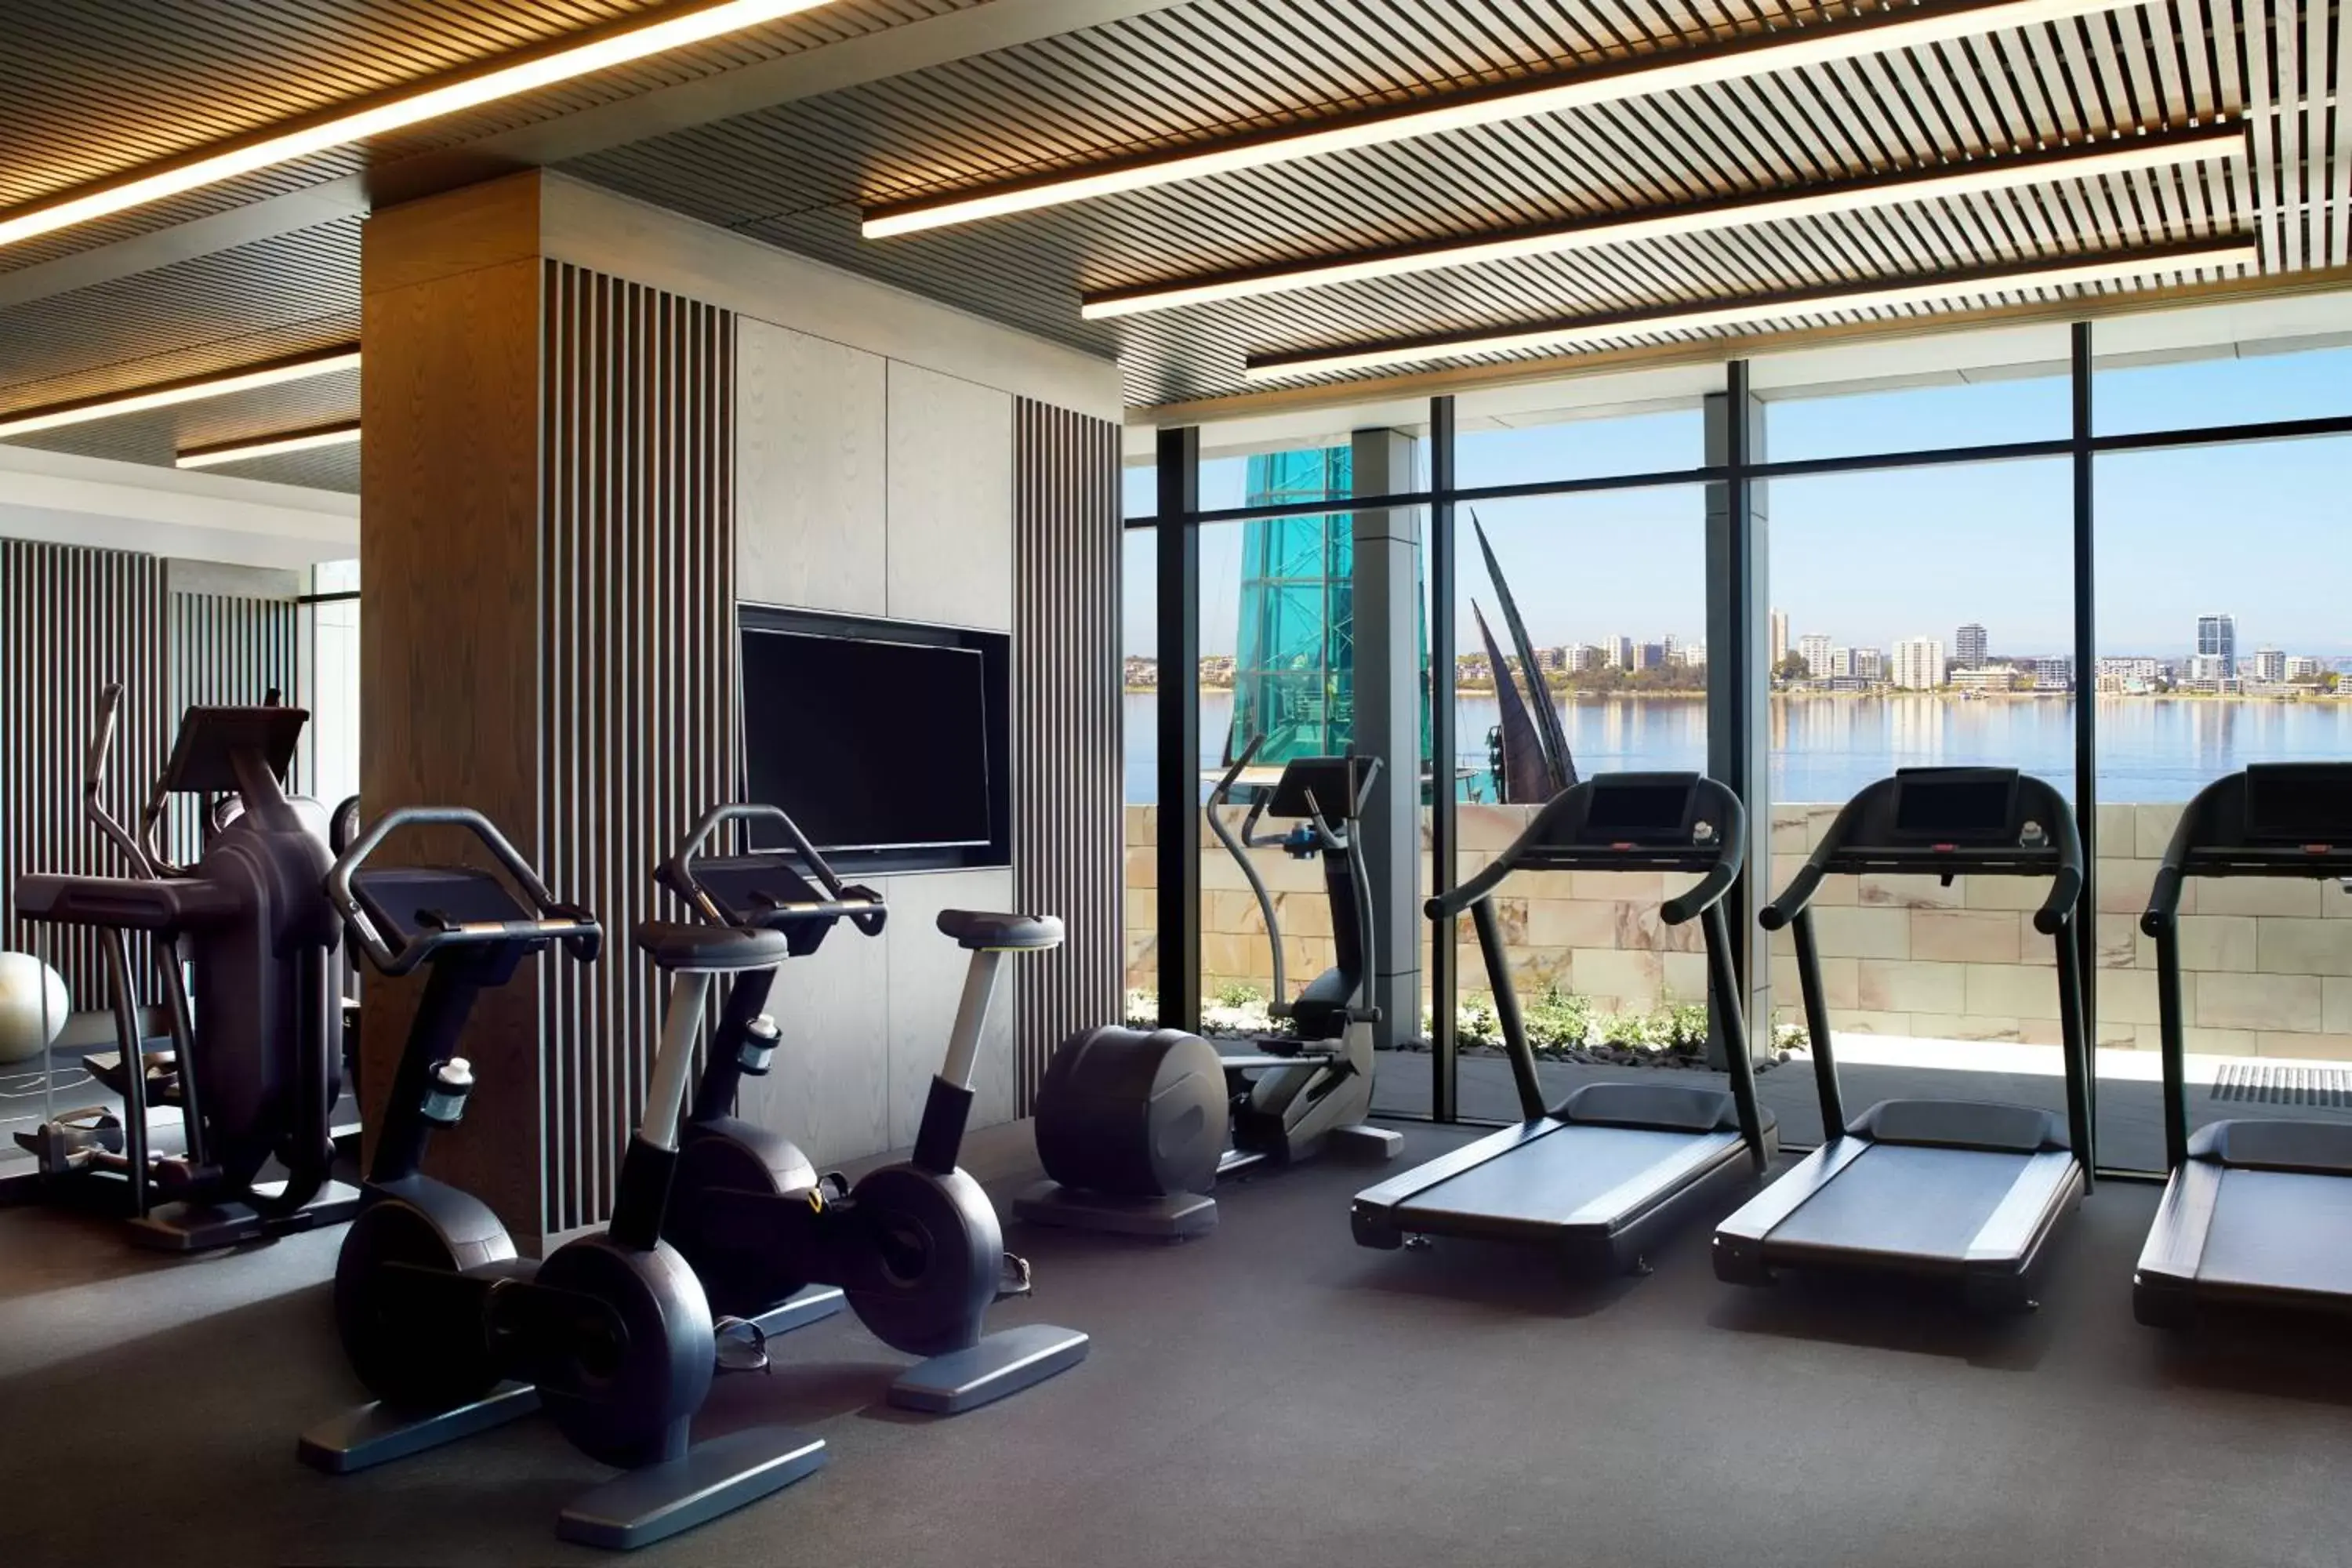 Fitness centre/facilities, Fitness Center/Facilities in The Ritz-Carlton, Perth